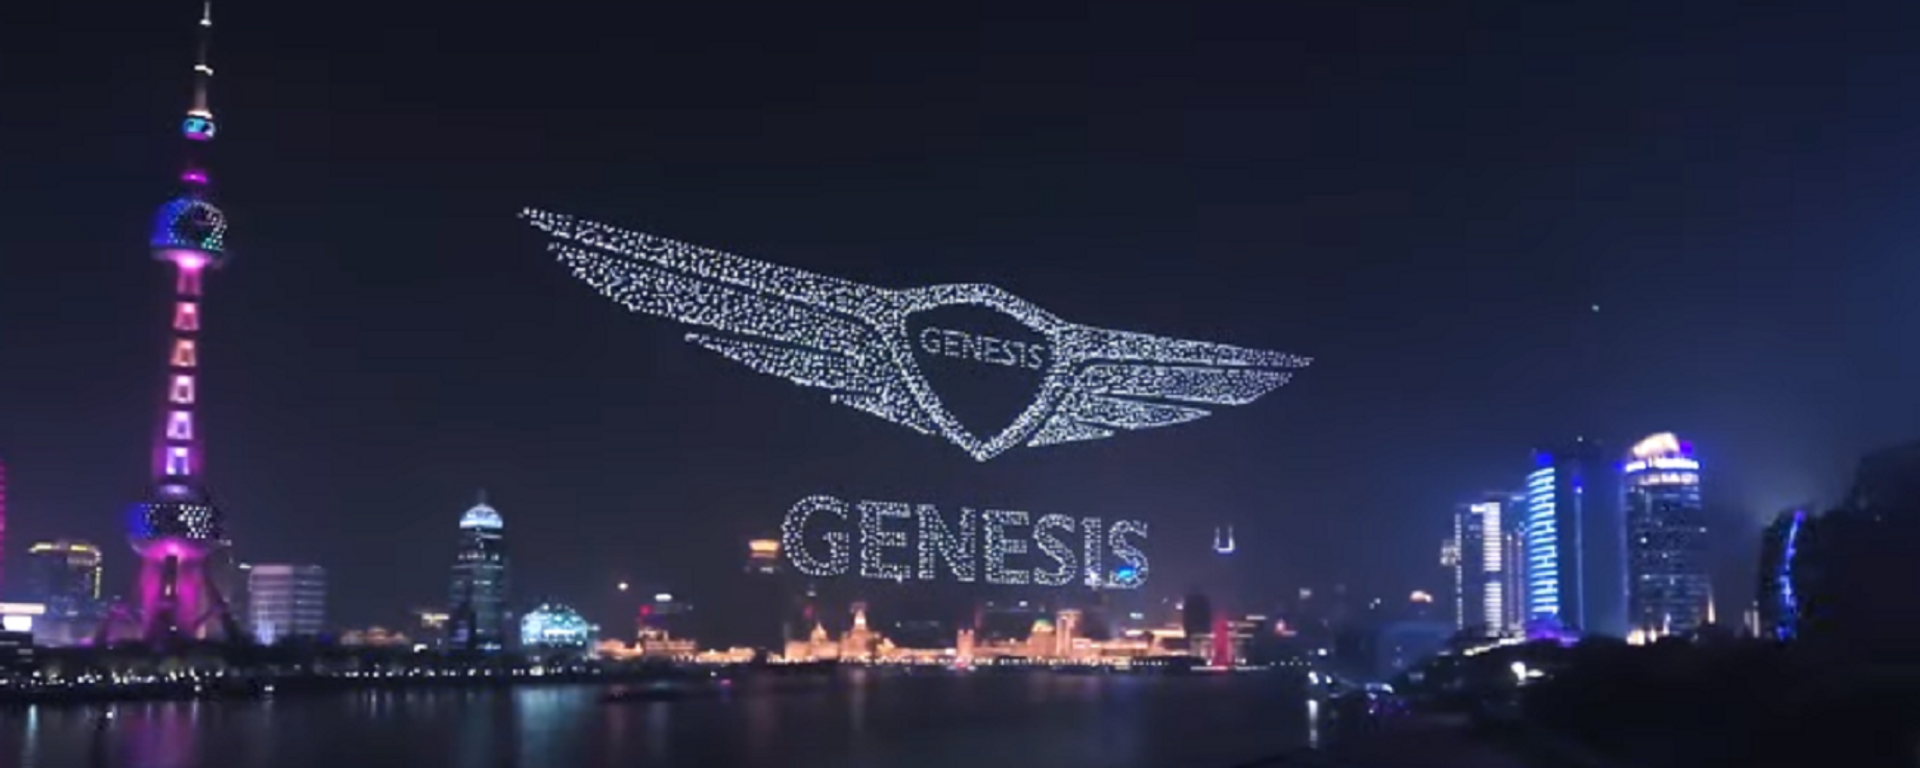 El espectáculo de drones de Genesis - Sputnik Mundo, 1920, 05.04.2021